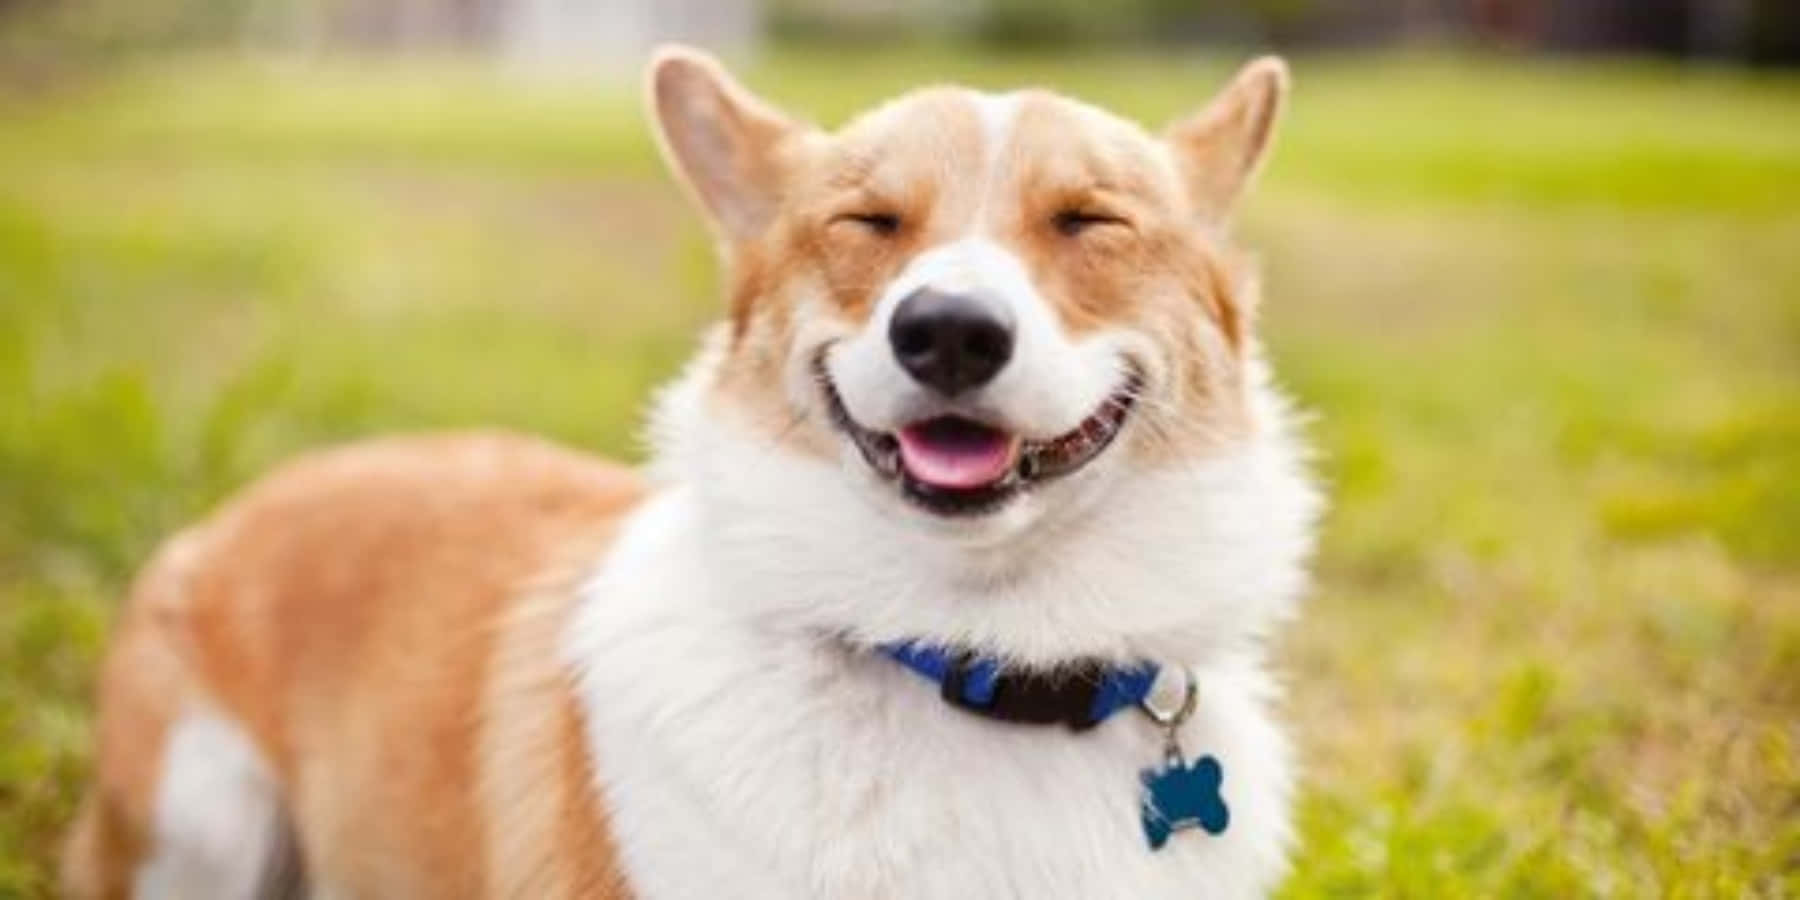 Lustigeshunde-bild Mit Niedlichem Lächeln